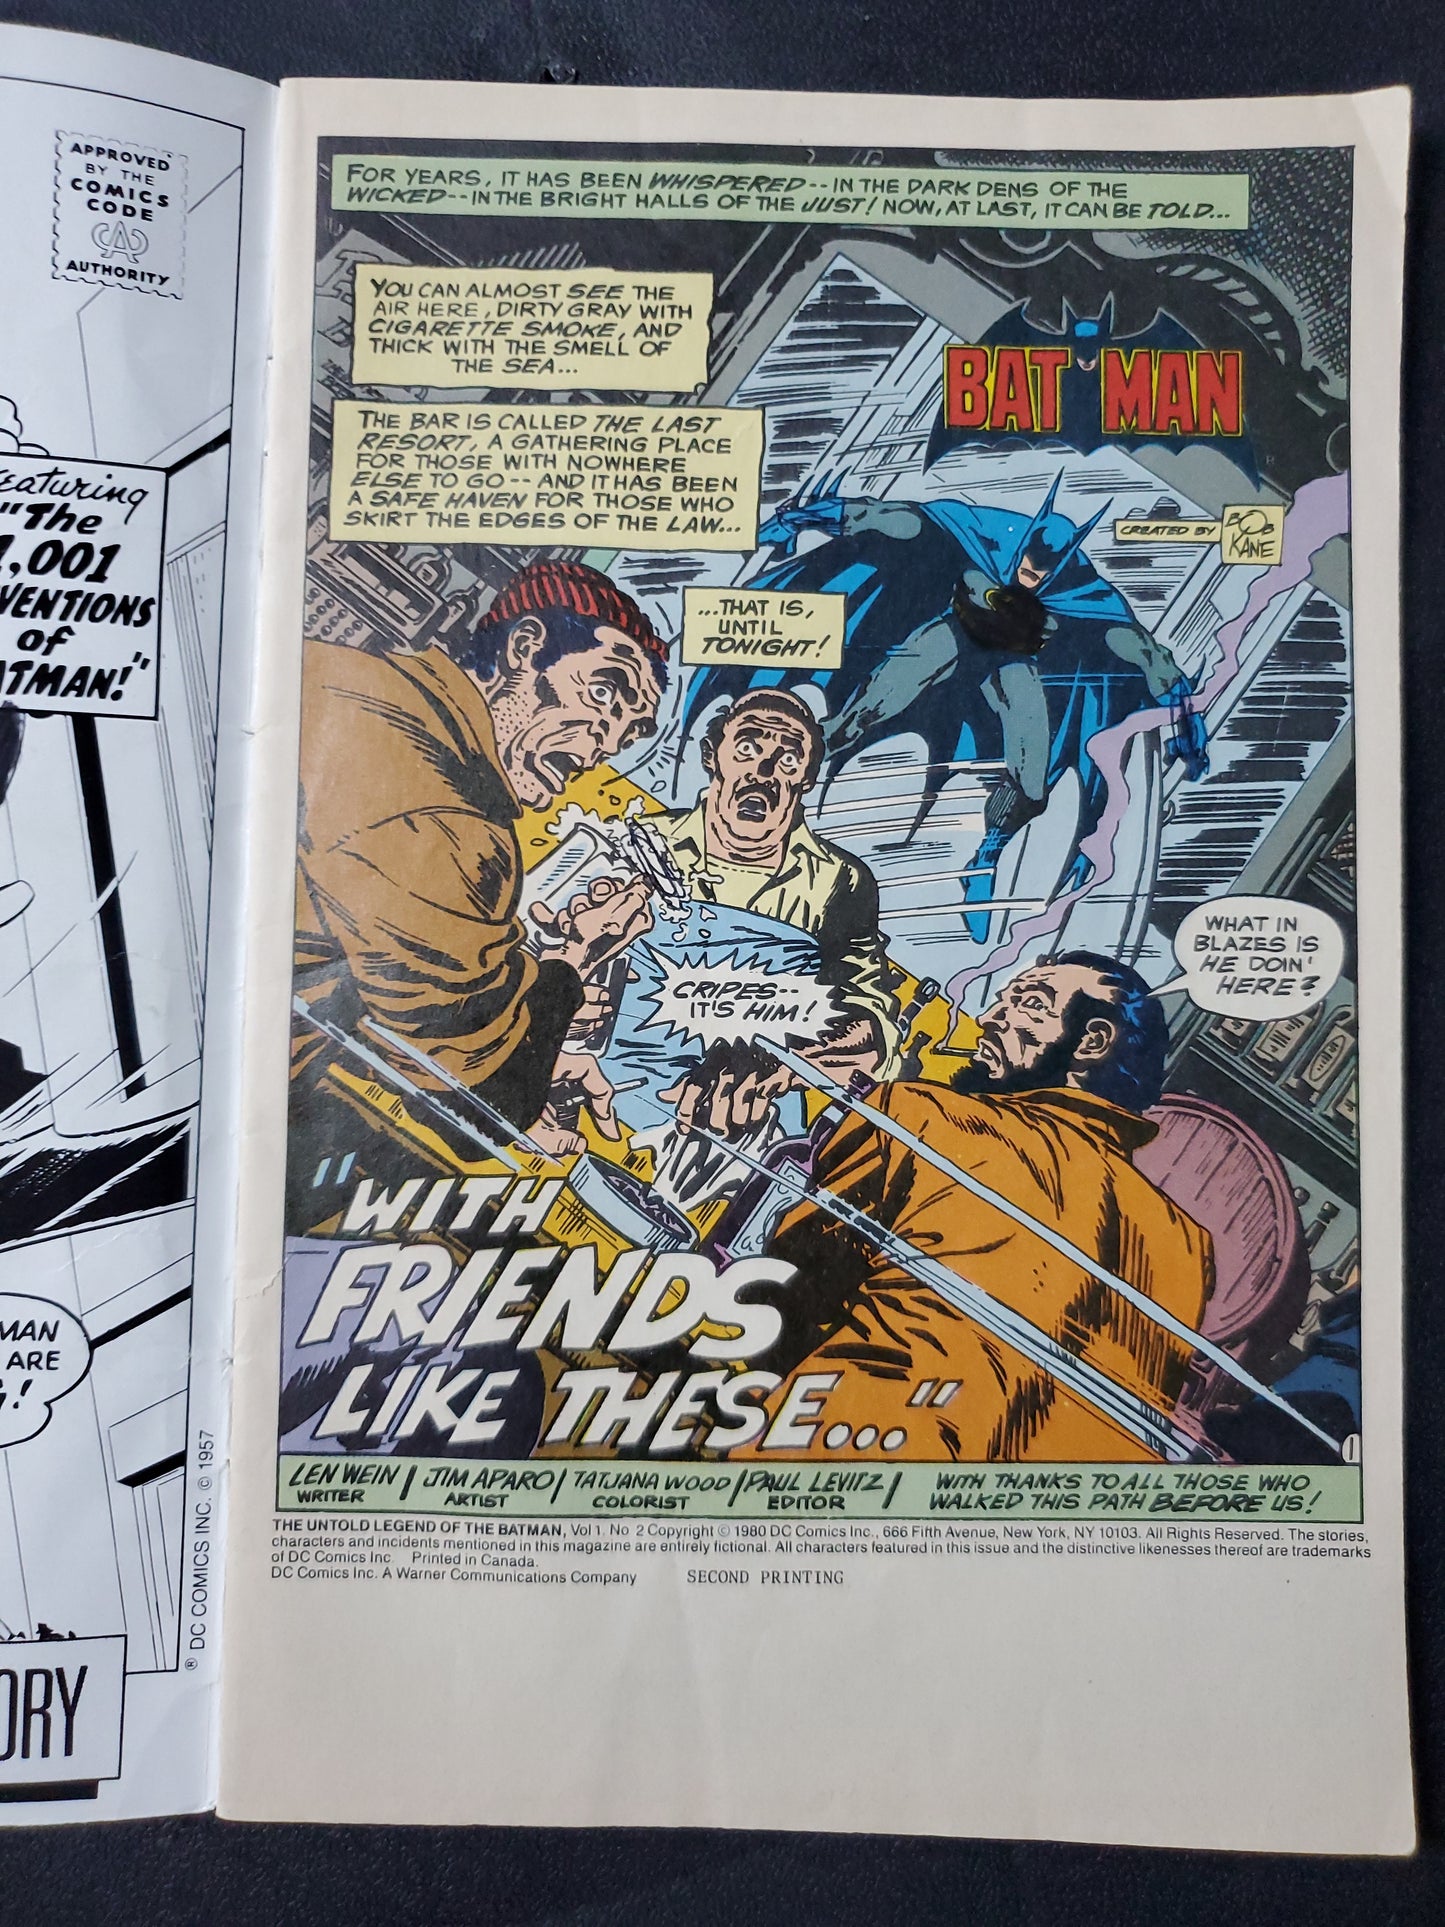 Batman Bundle 1-3 (1980) The Untold Legend DC